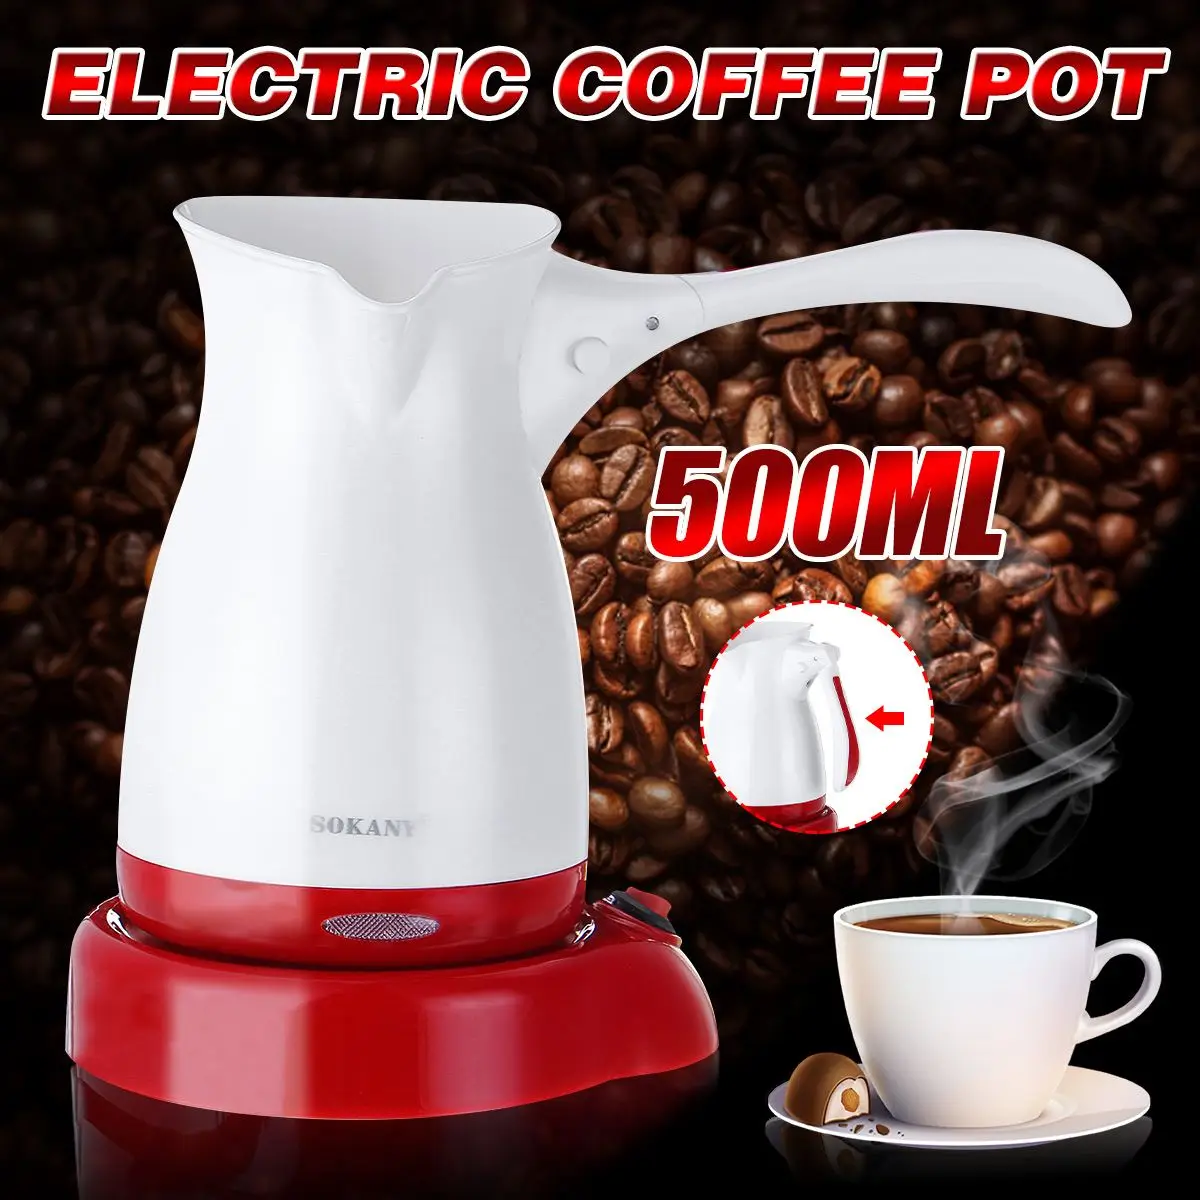 

220V 600W Кофе Эспрессо машина многофункциональная печь мокко горшок percolato Кофе горшок быстрый нагрев воды Кофе чай нагрева